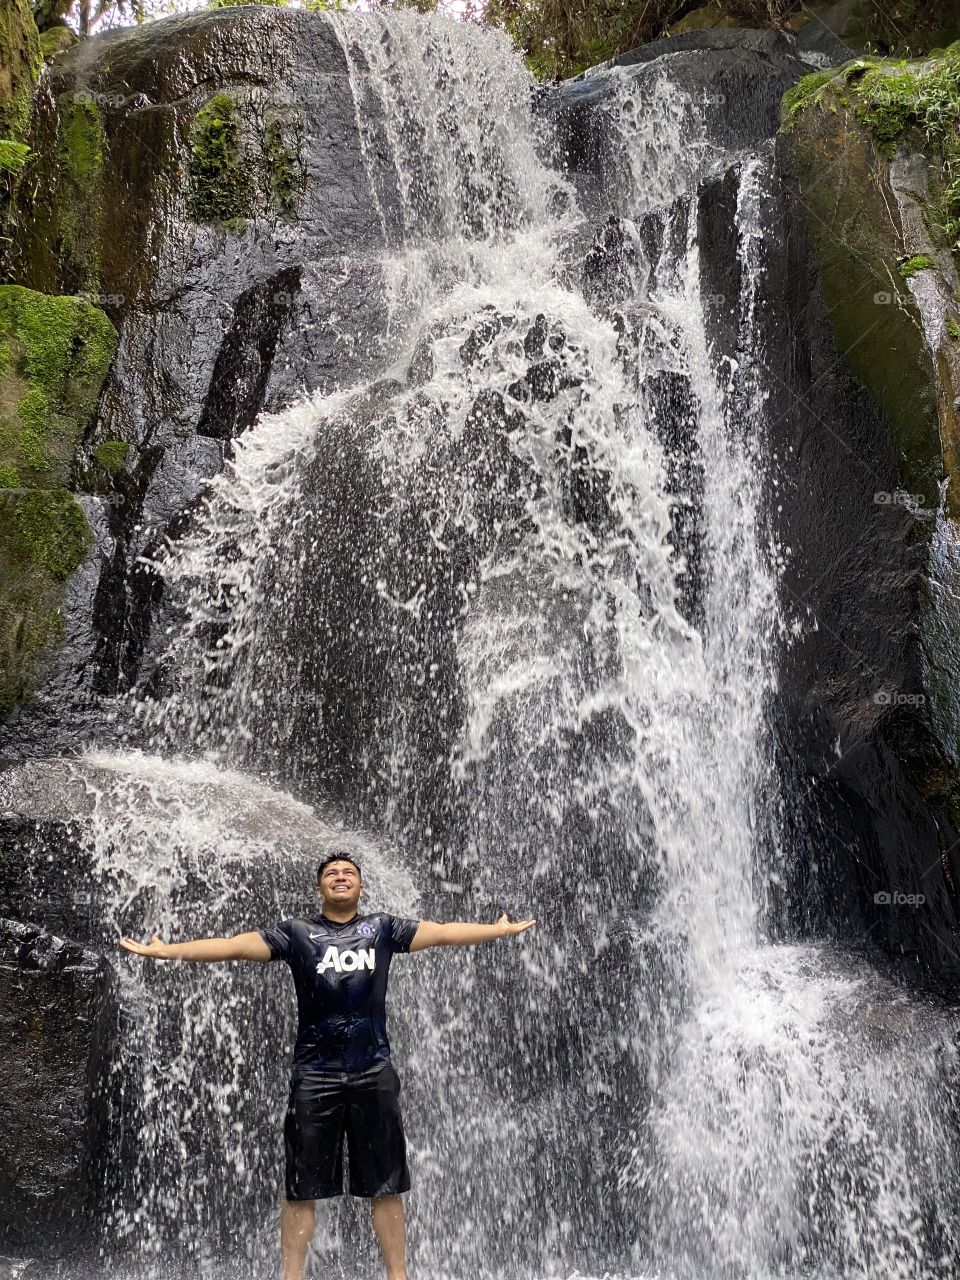 Alan in Waterfall